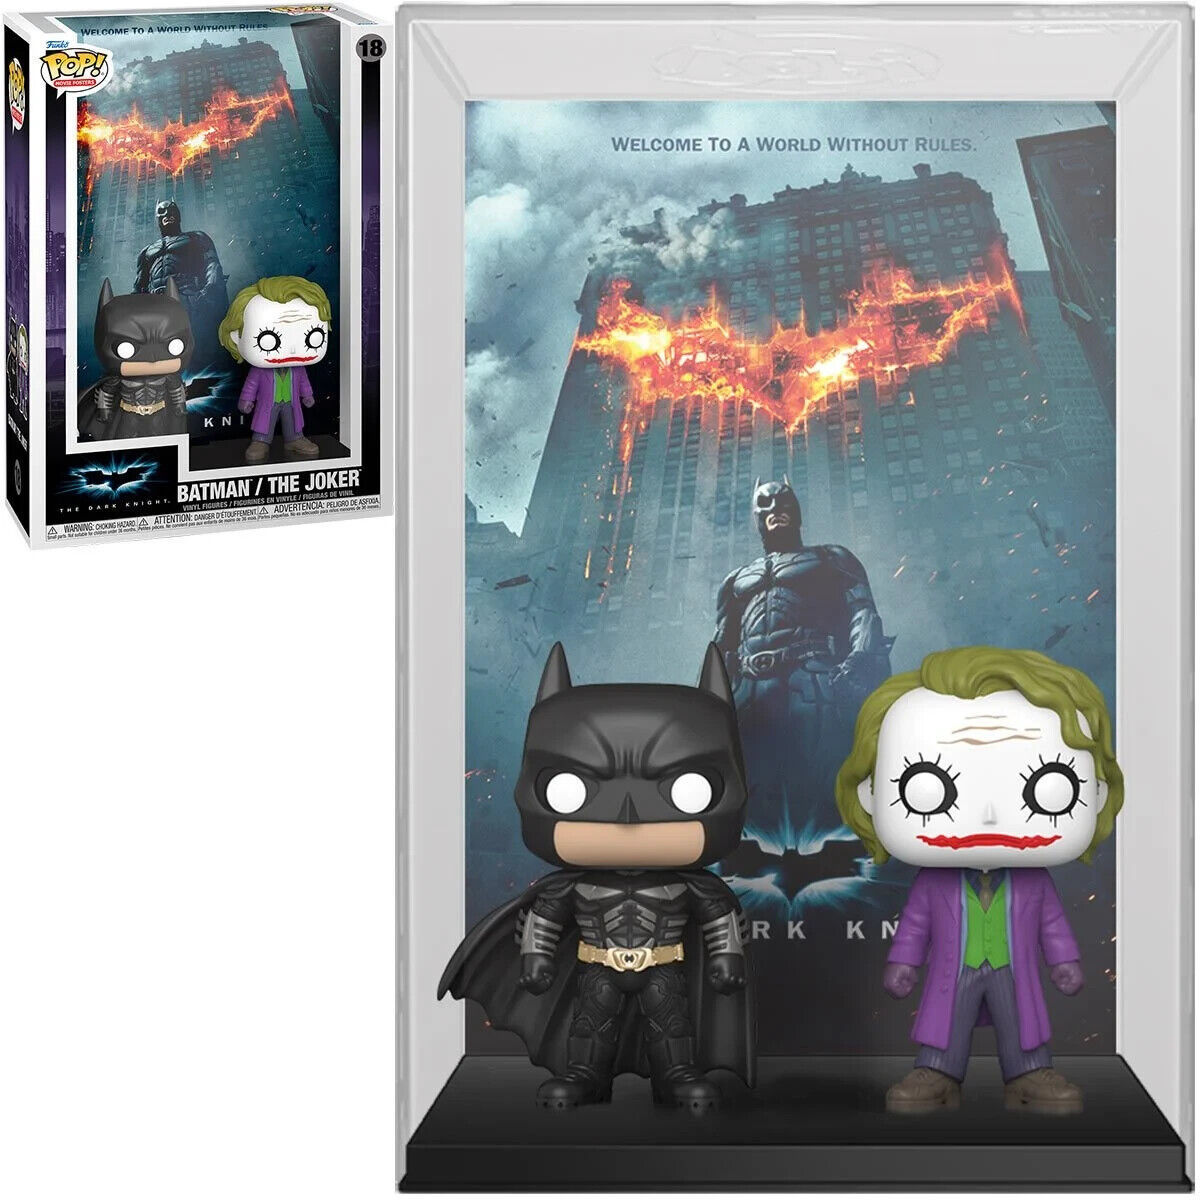 NEW/MINT Funko Pop! Movie Poster: The Dark Knight - Batman/Joker #18~ FREE SHIP! - $64.99